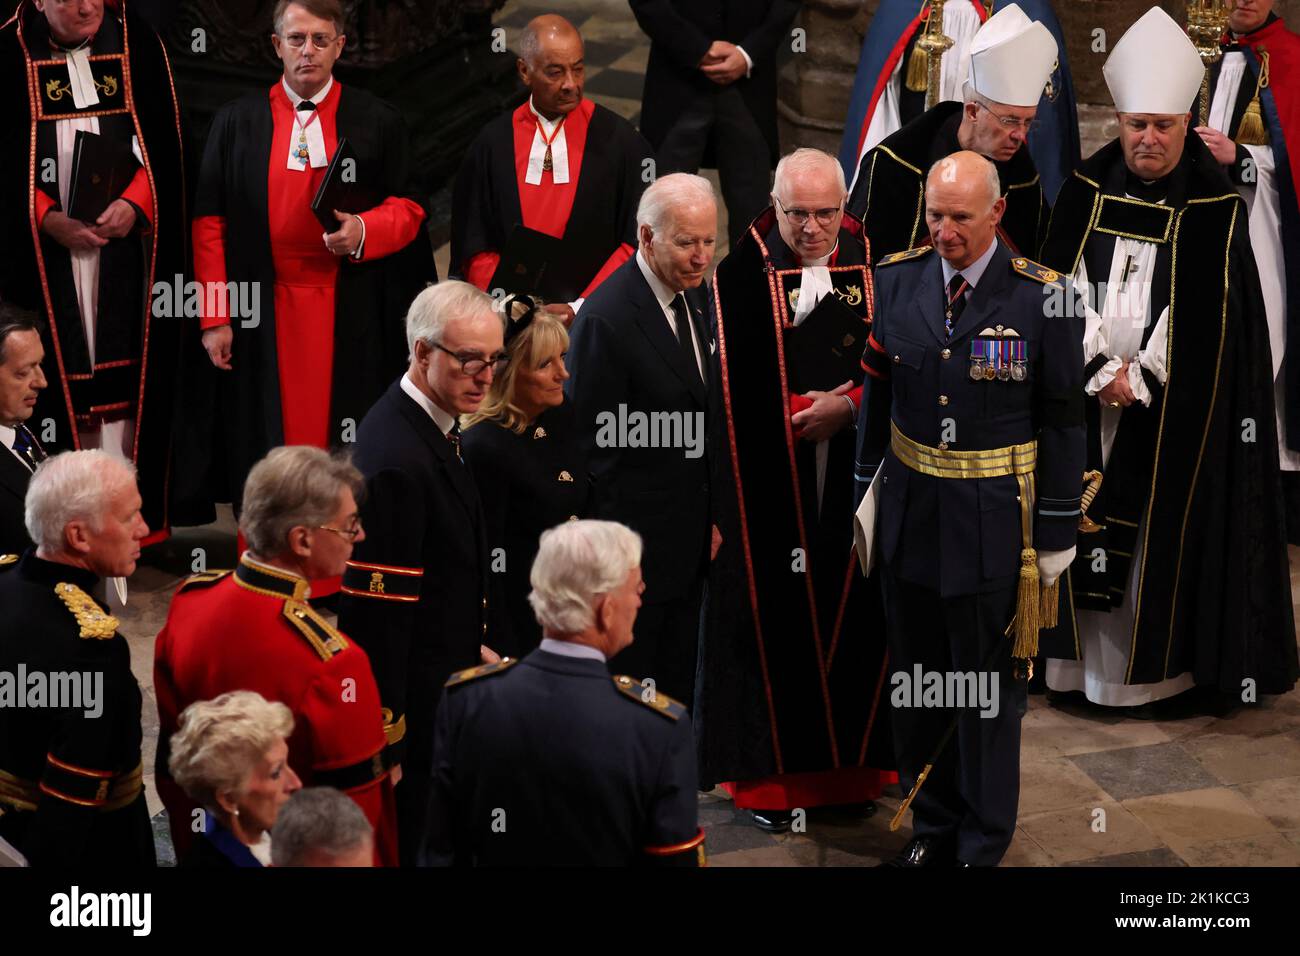 Der Präsident der Vereinigten Staaten, Joe Biden, und die First Lady Jill Biden kommen zum State Funeral von Queen Elizabeth II, das in Westminster Abbey, London, stattfindet. Bilddatum: Montag, 19. September 2022. Stockfoto